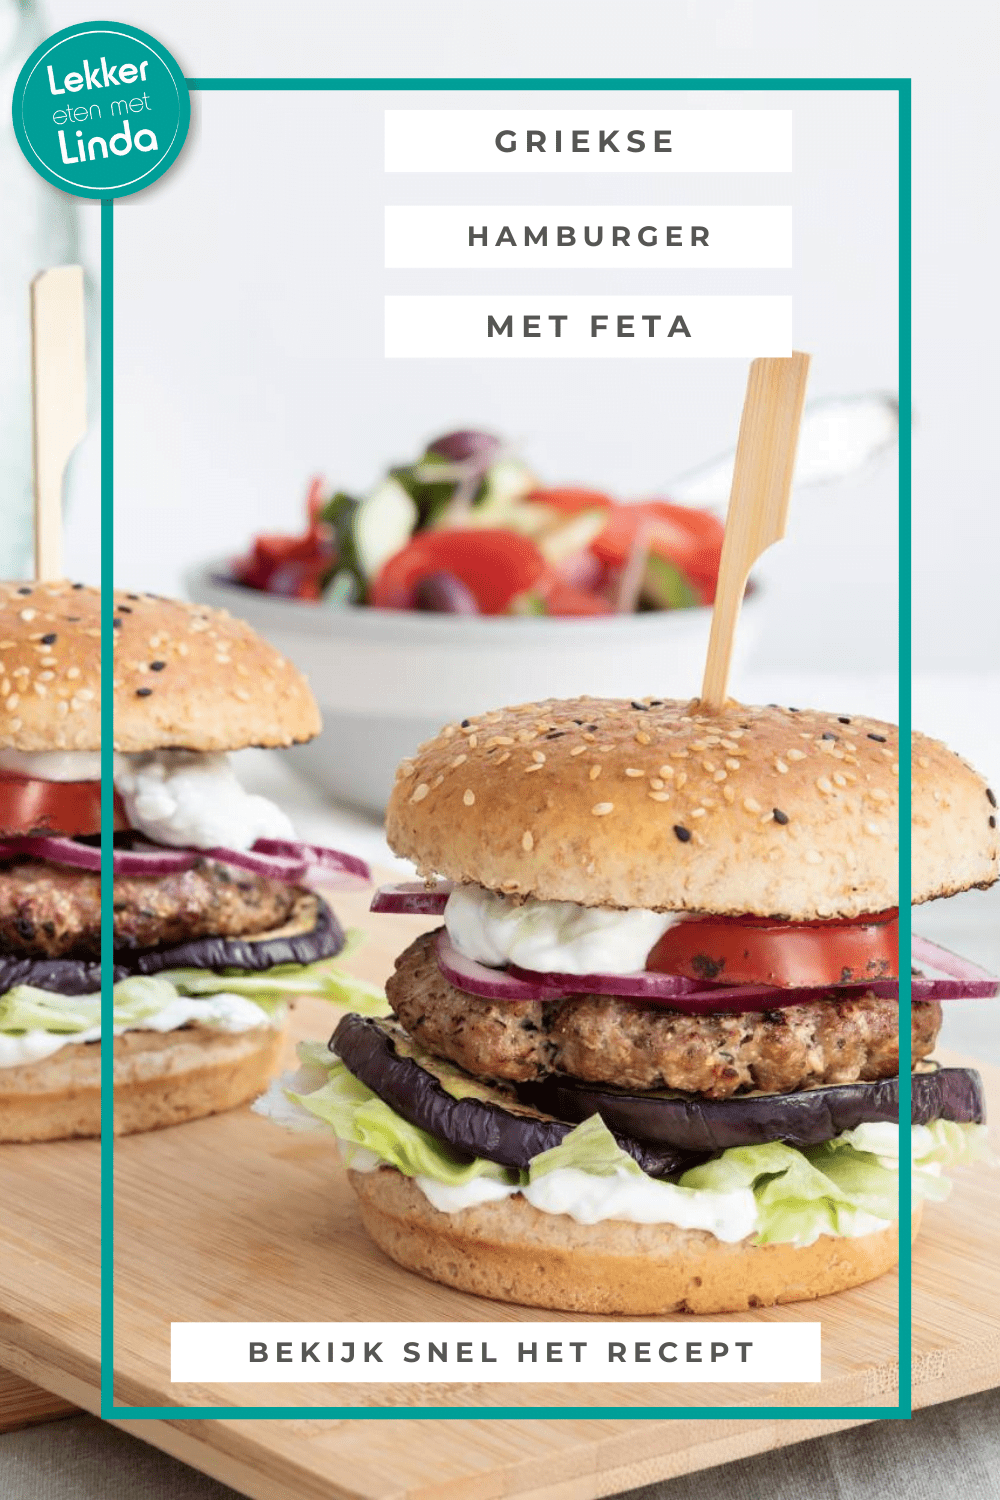 Grieks recept voor een hamburger met feta